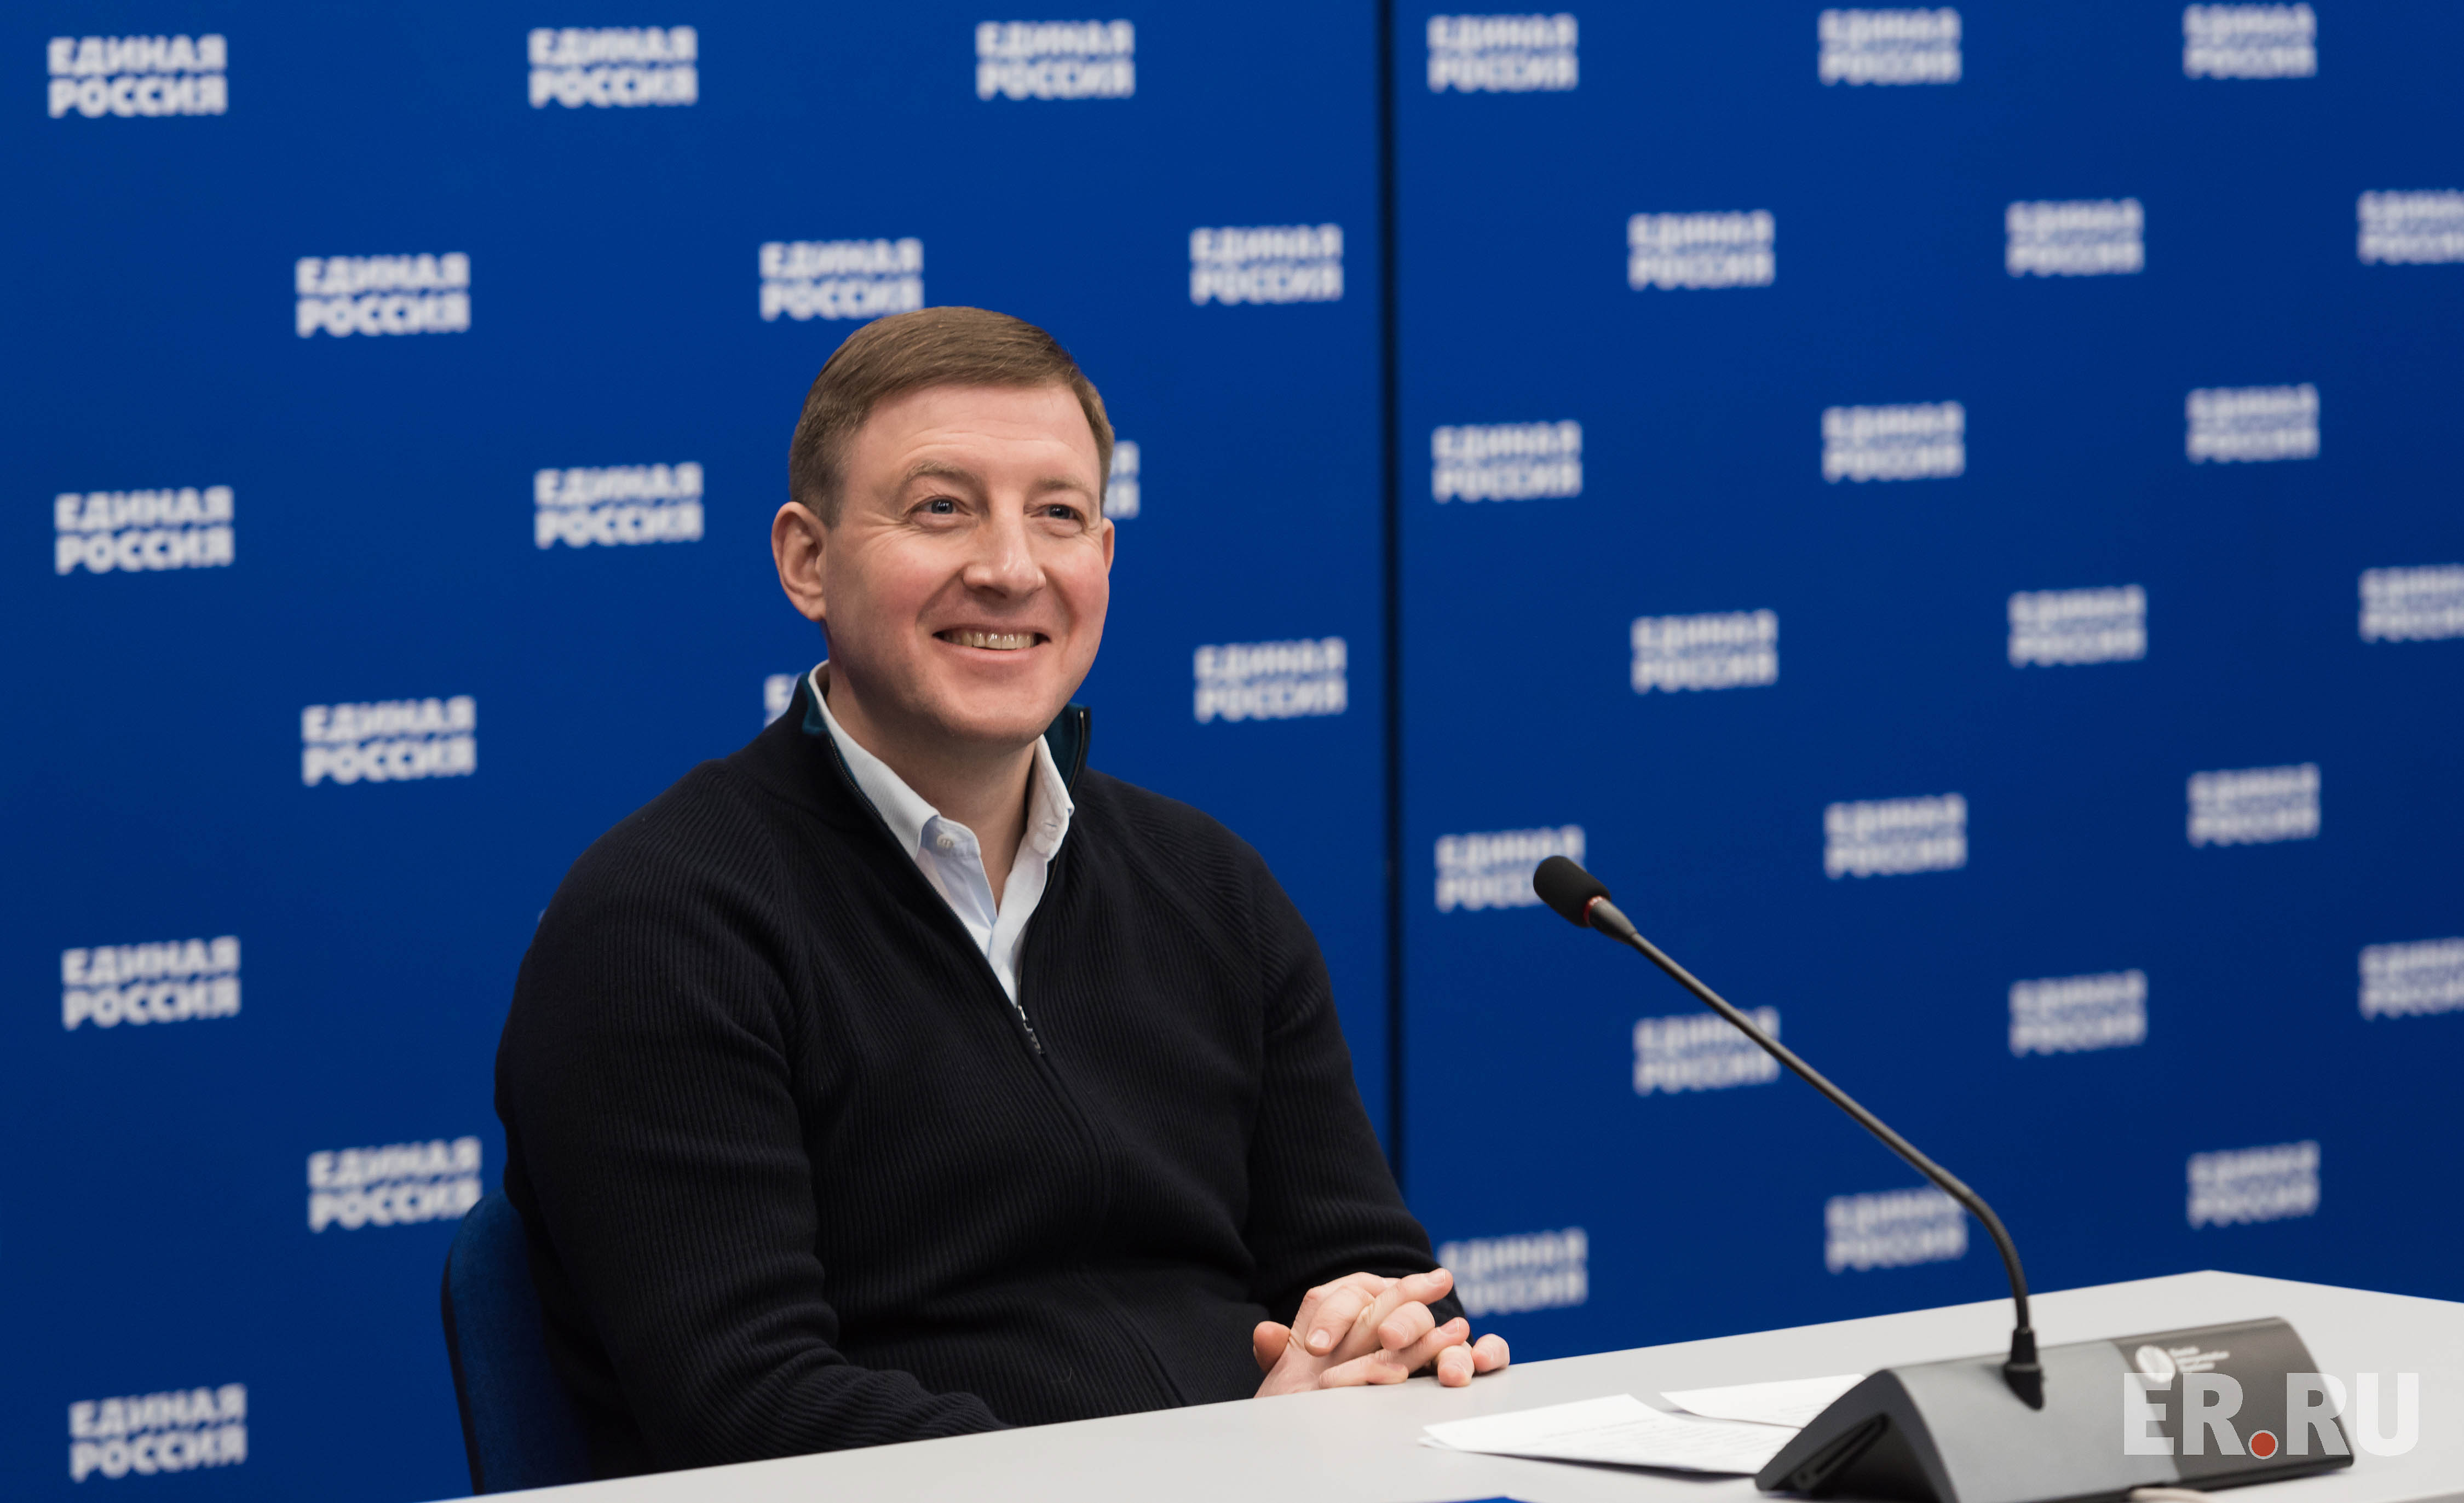 Дмитрий Медведев и Андрей Турчак обсудили готовность «Единой России» к проведению предварительного голосования